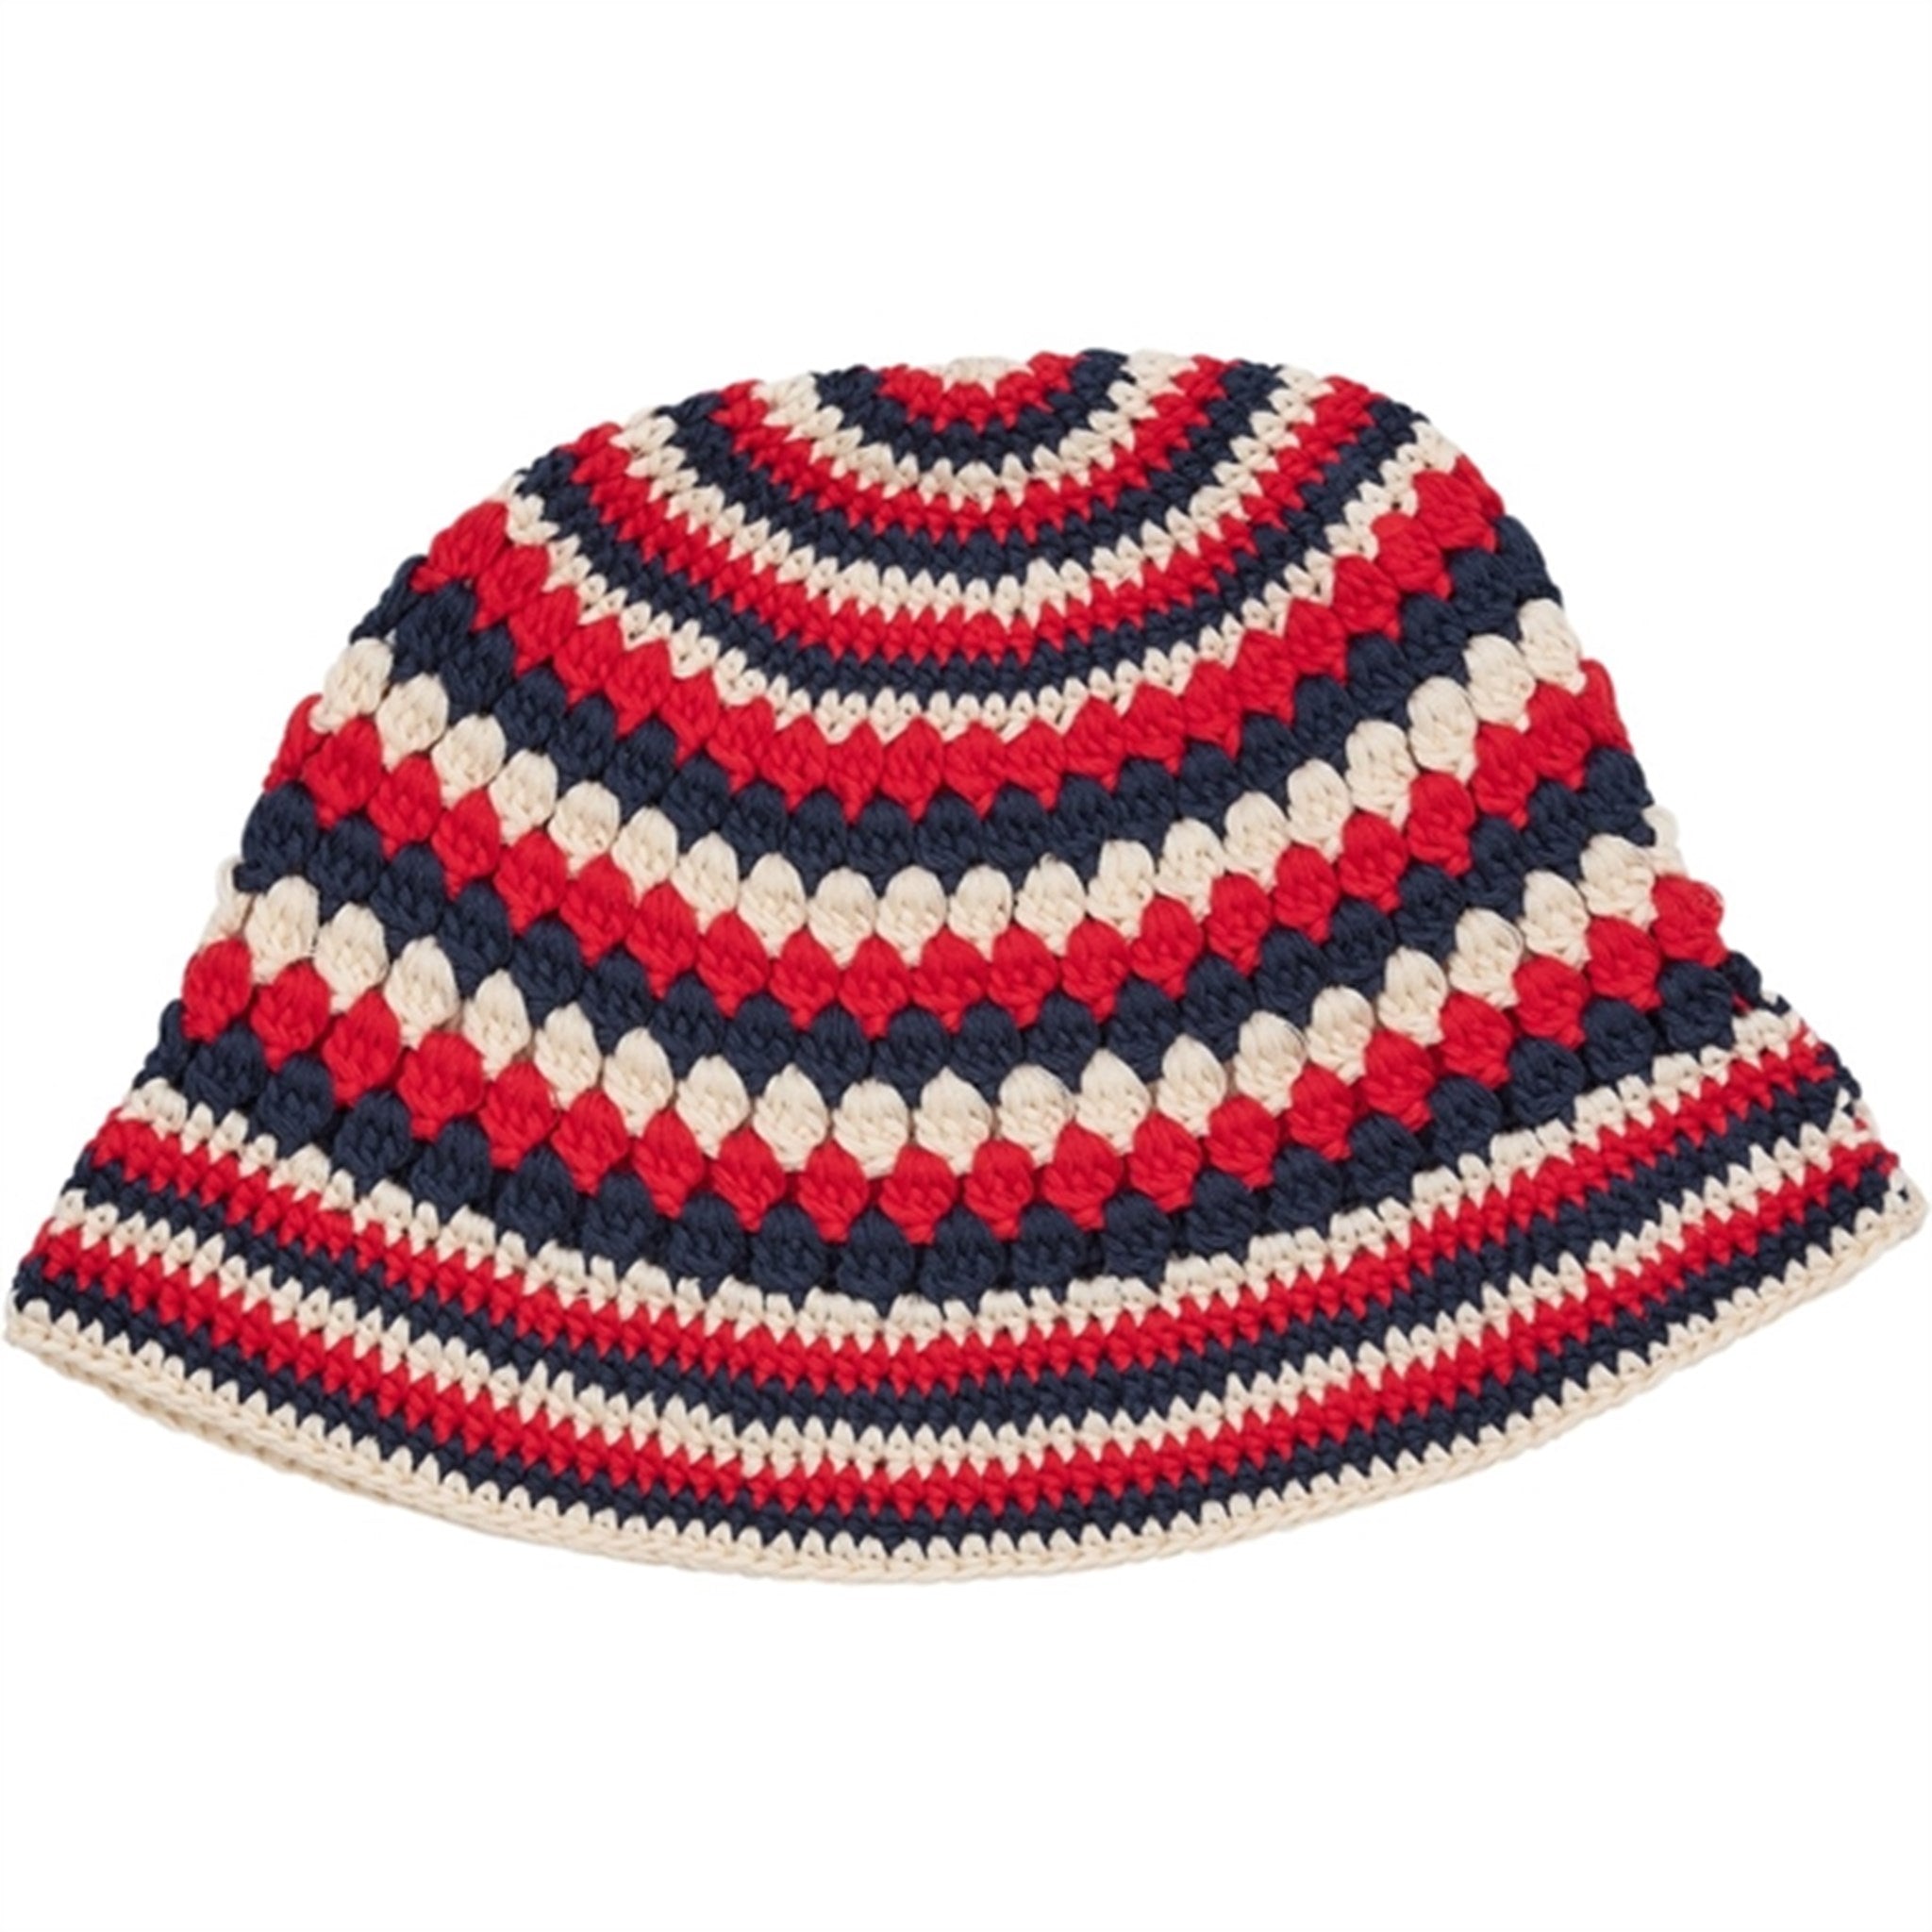 Copenhagen Colors Cream/Navy/Red Comb. Crocheted Hat